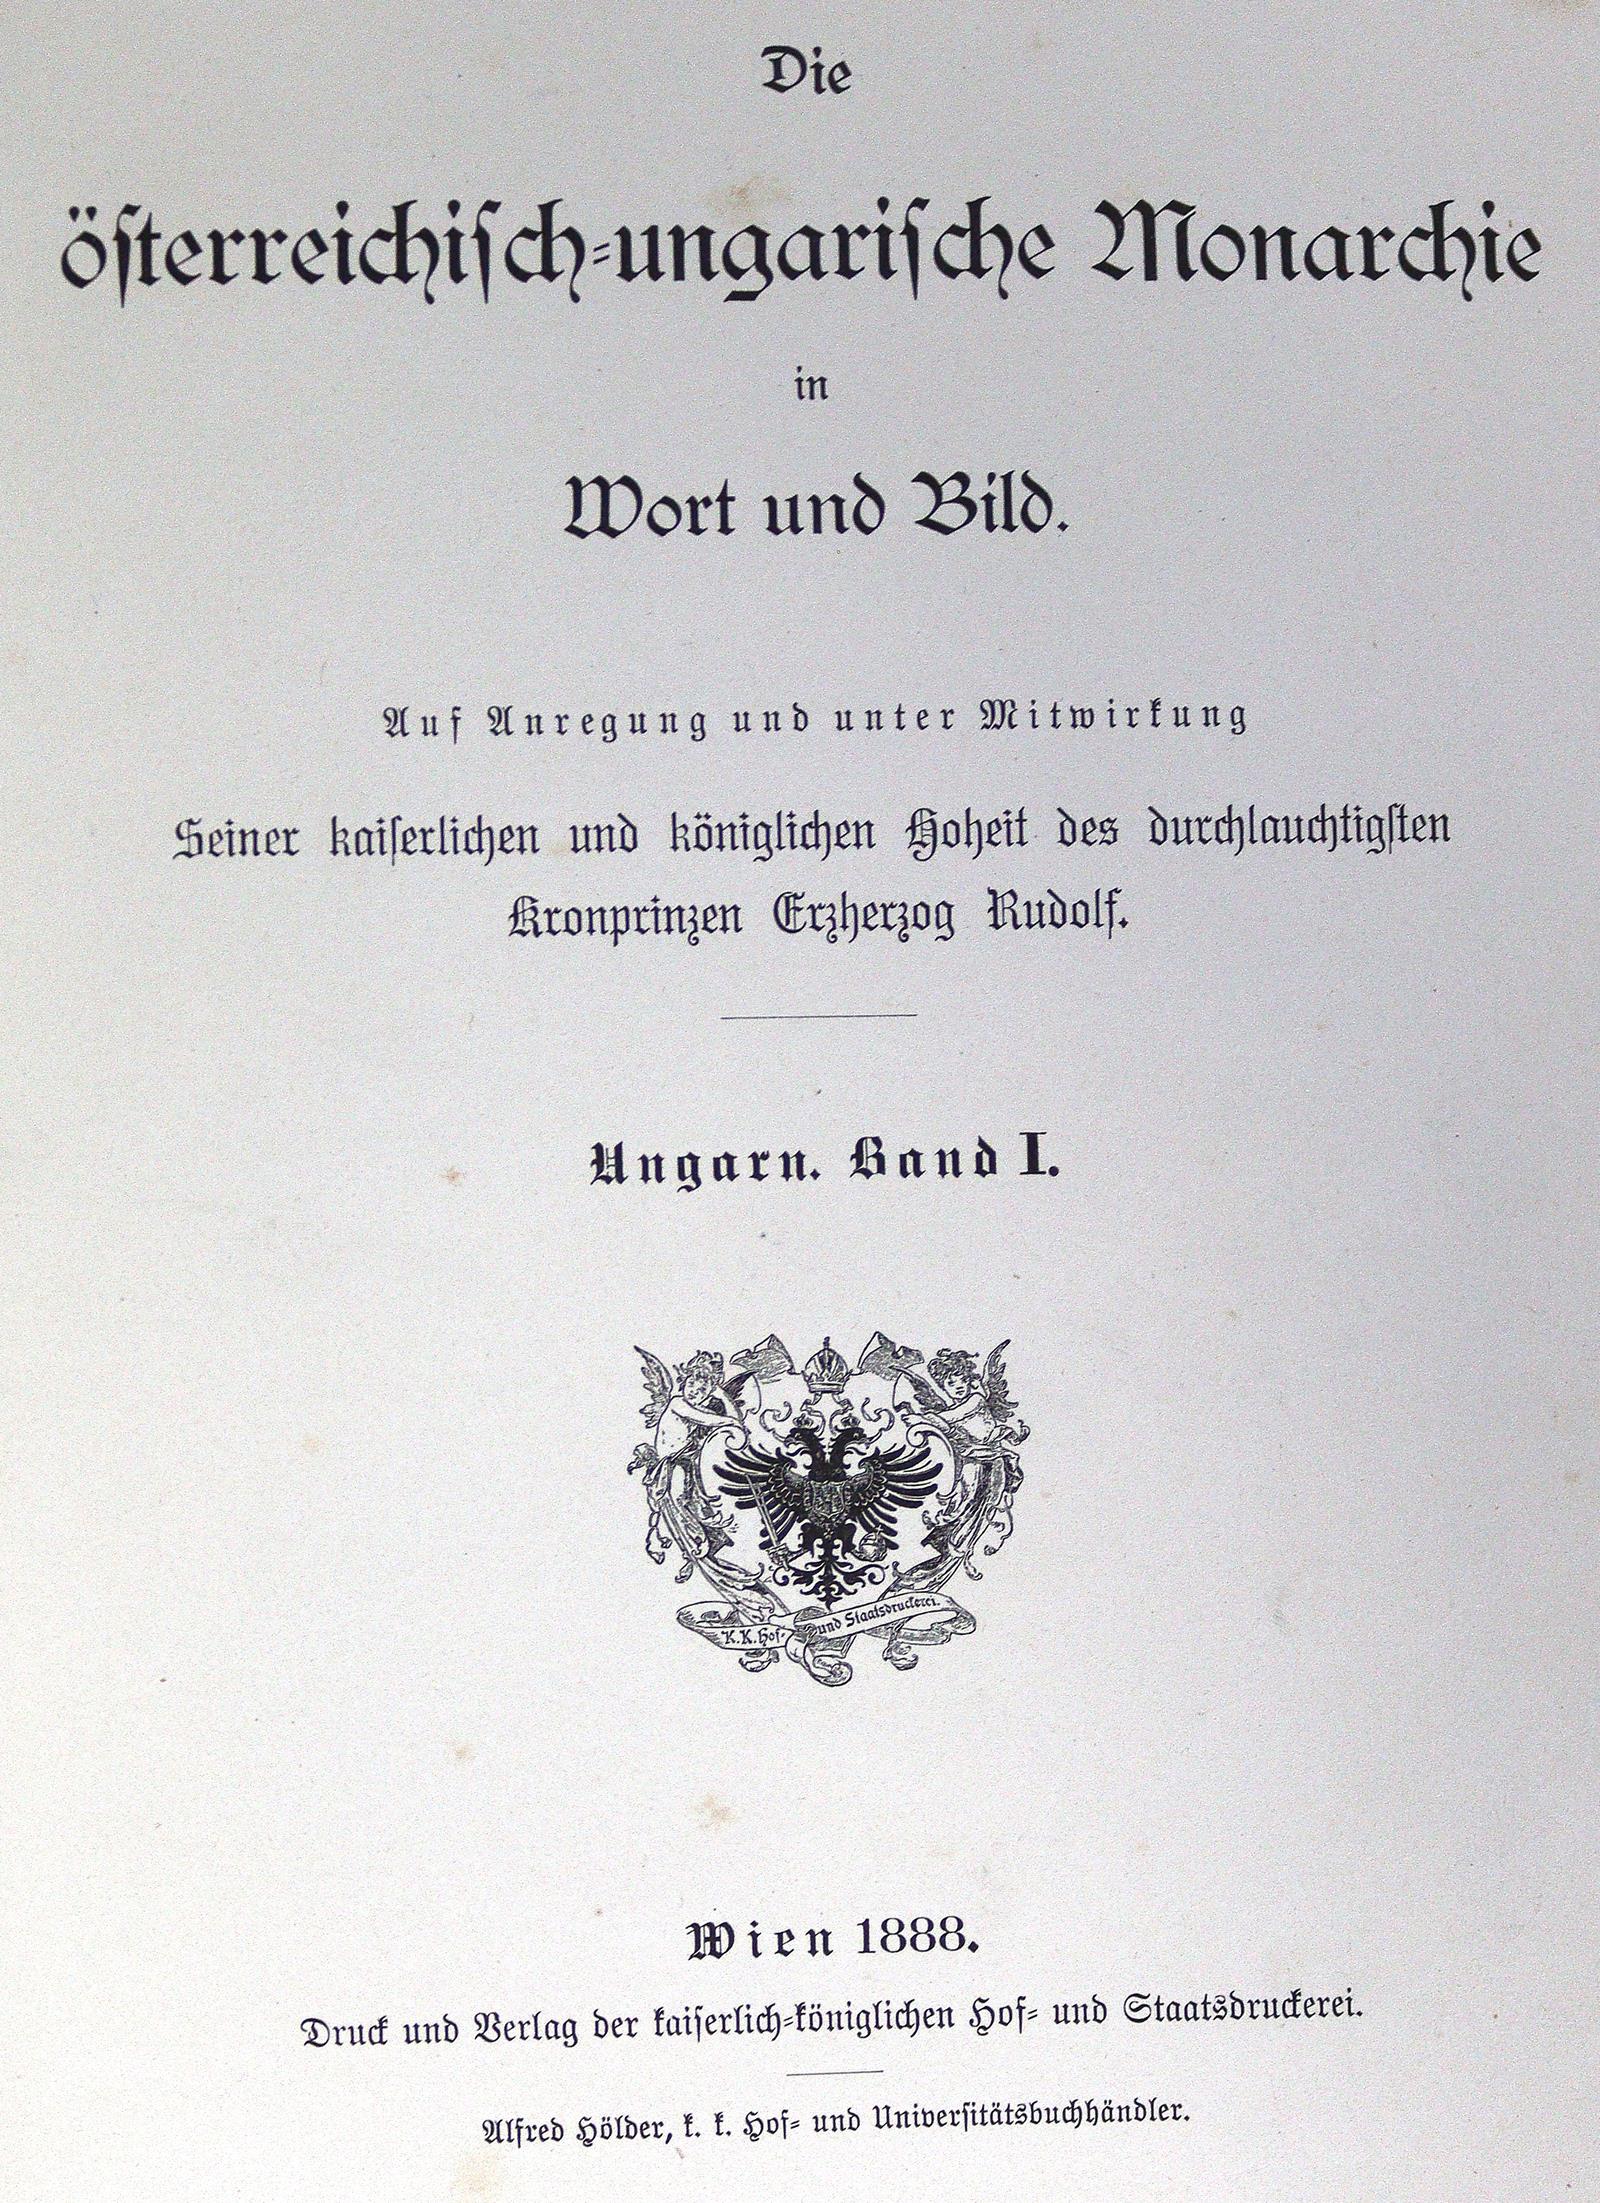 Österreichisch-ungarische Monarchie, Die, | Bild Nr.1